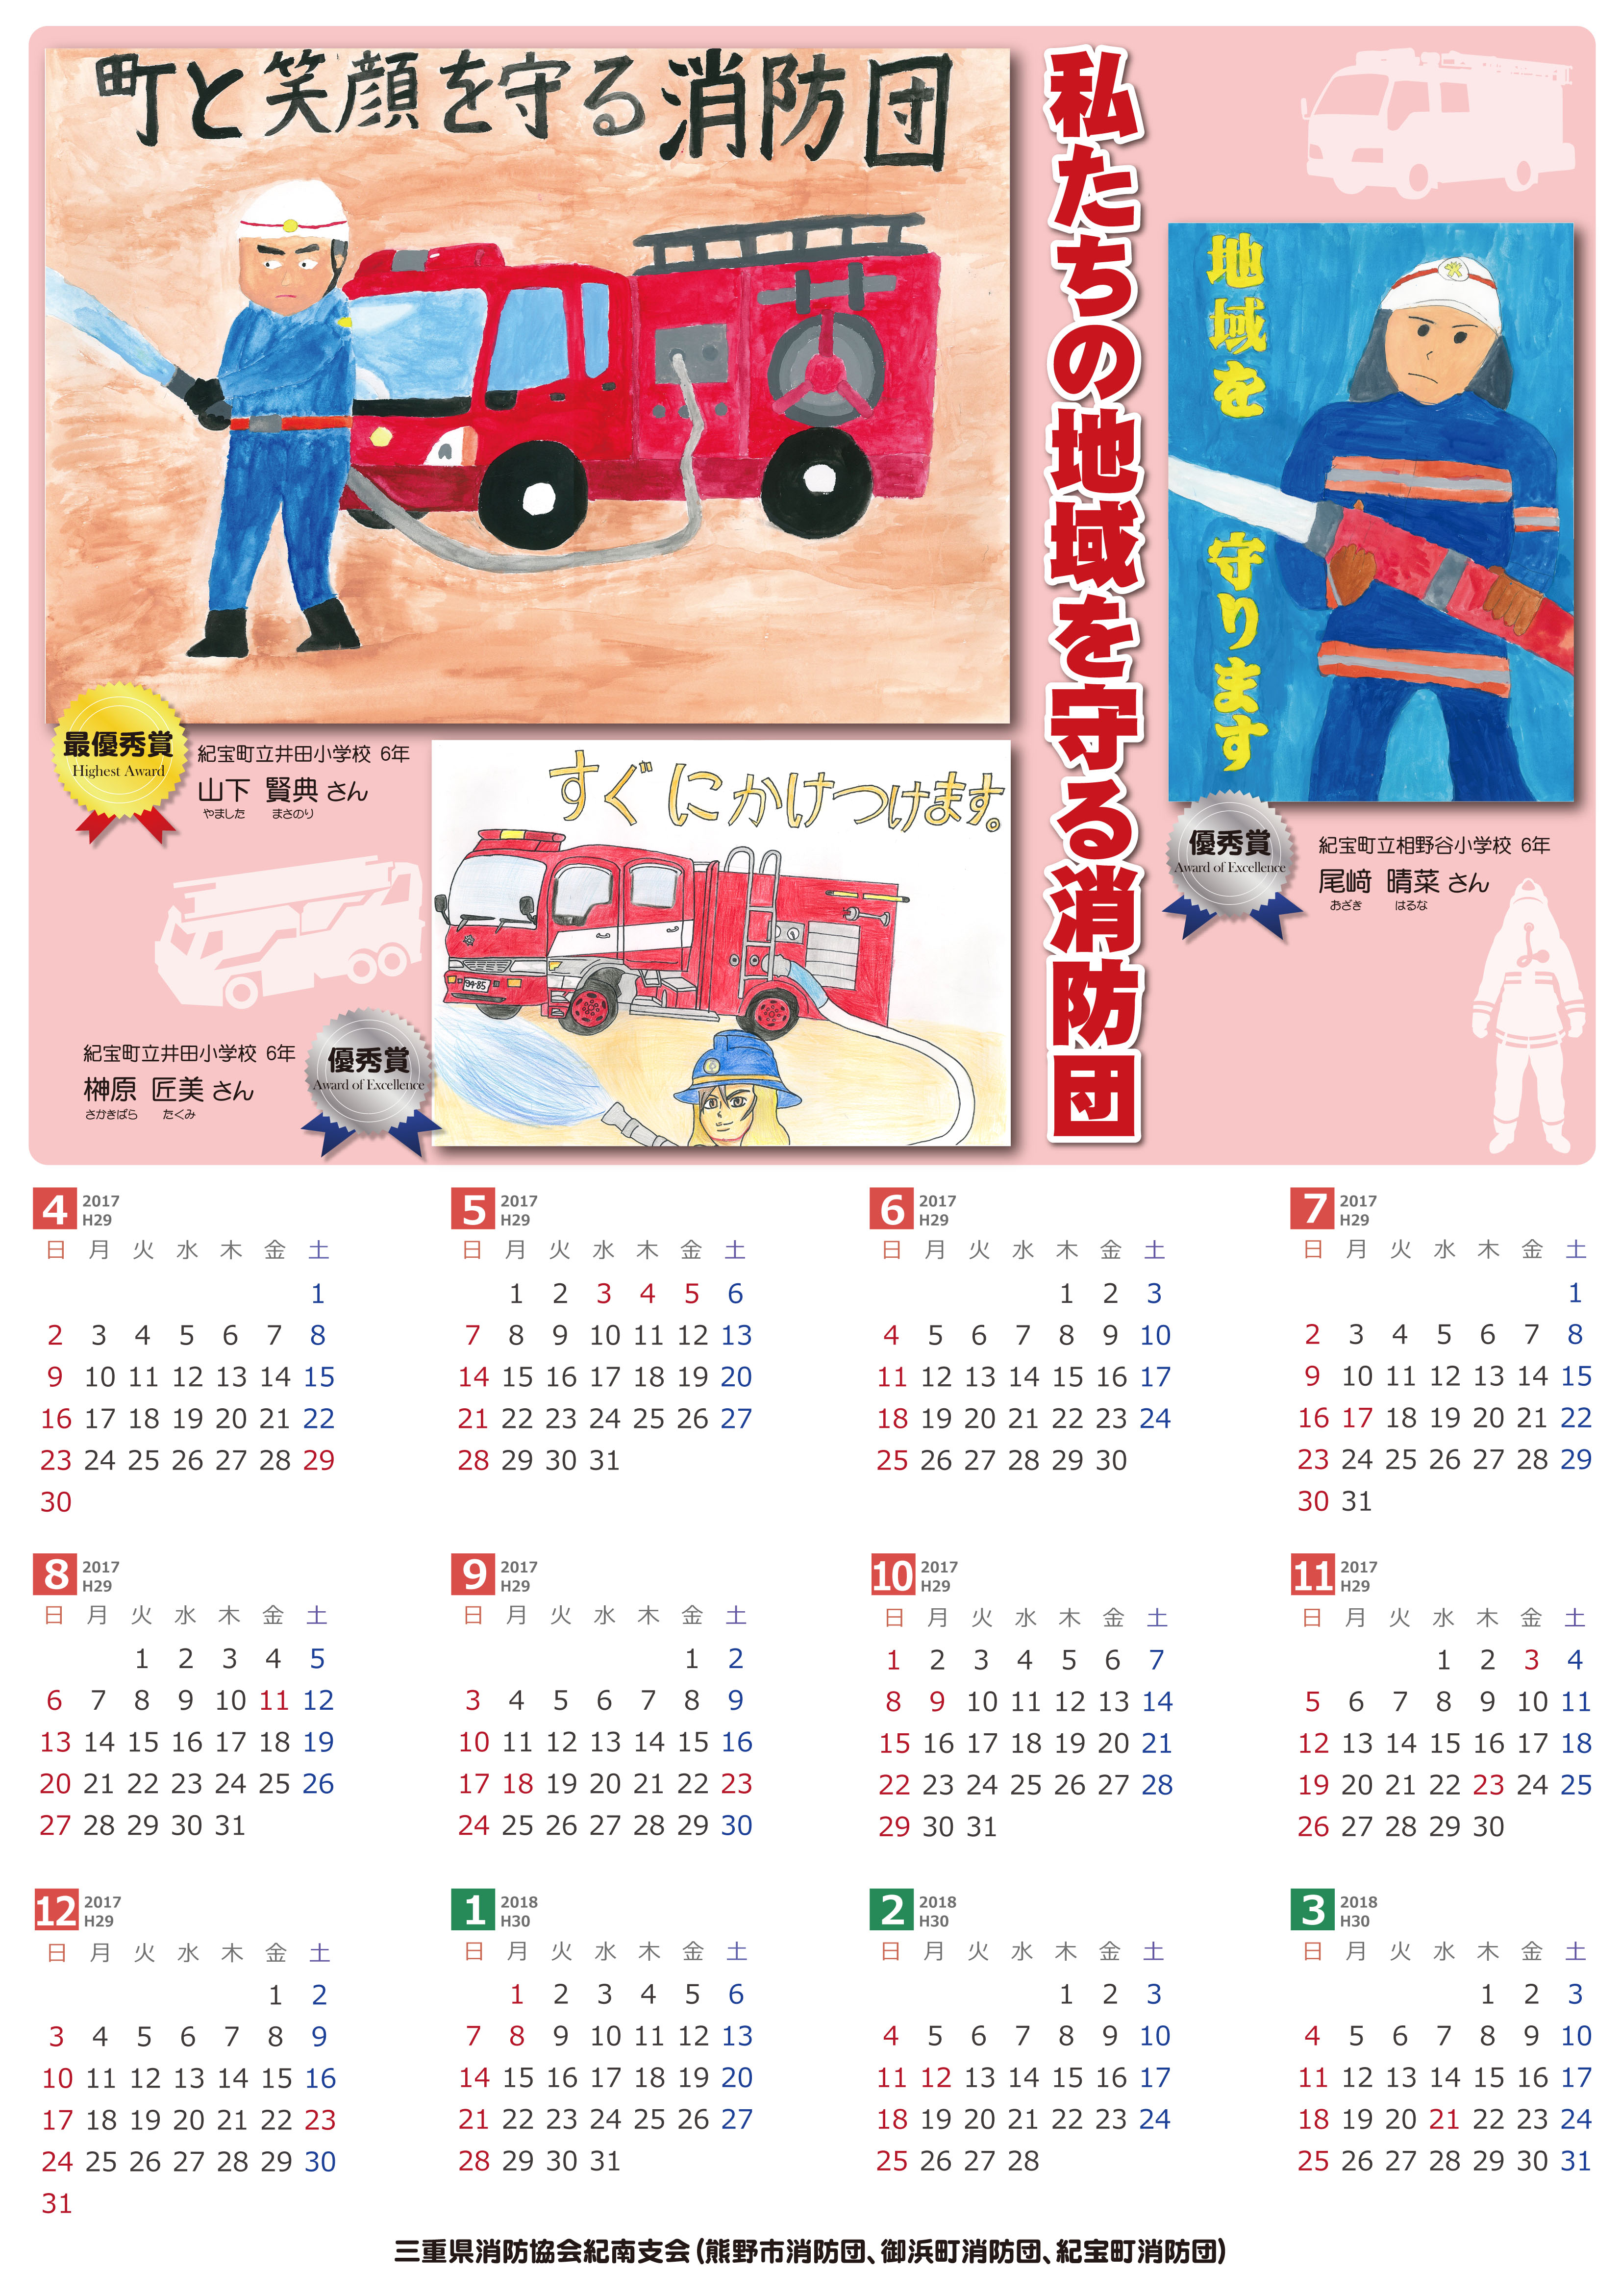 三重県 消防 救急 消防団絵画コンクール作品を活用したカレンダーを製作しました